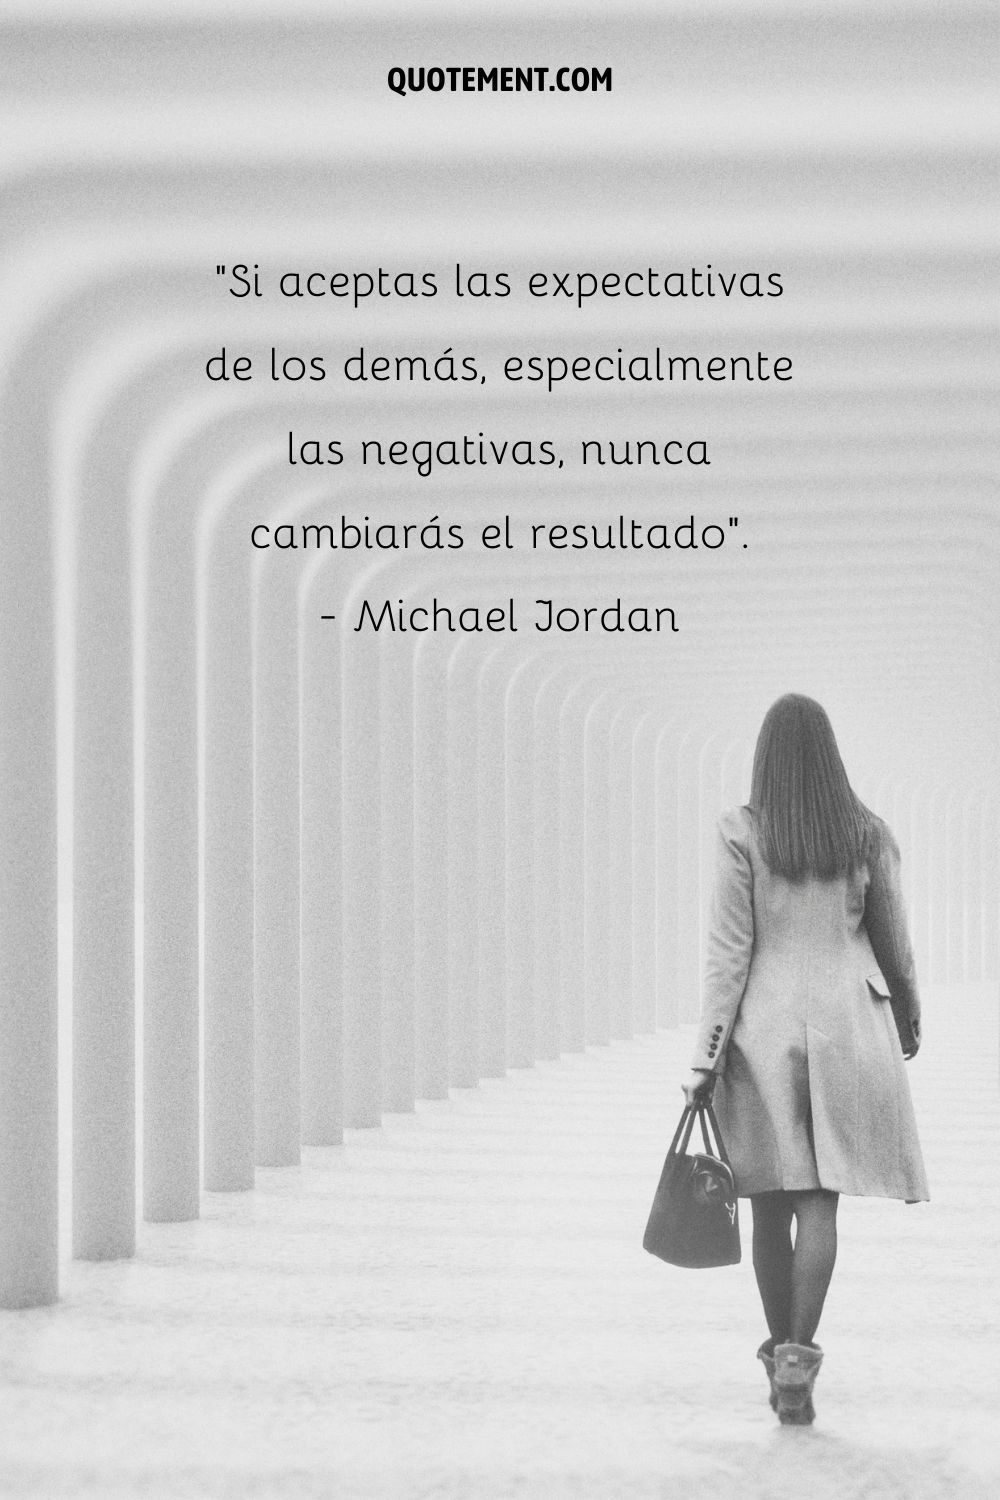 "Si aceptas las expectativas de los demás, especialmente las negativas, nunca cambiarás el resultado". - Michael Jordan